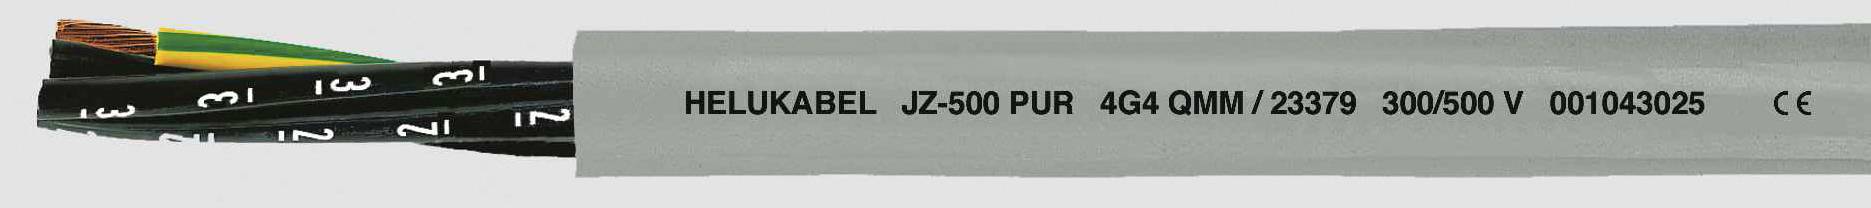 HELUKABEL JZ-500 PUR Steuerleitung 4 G 2.50 mm² Grau 23375-1000 1000 m